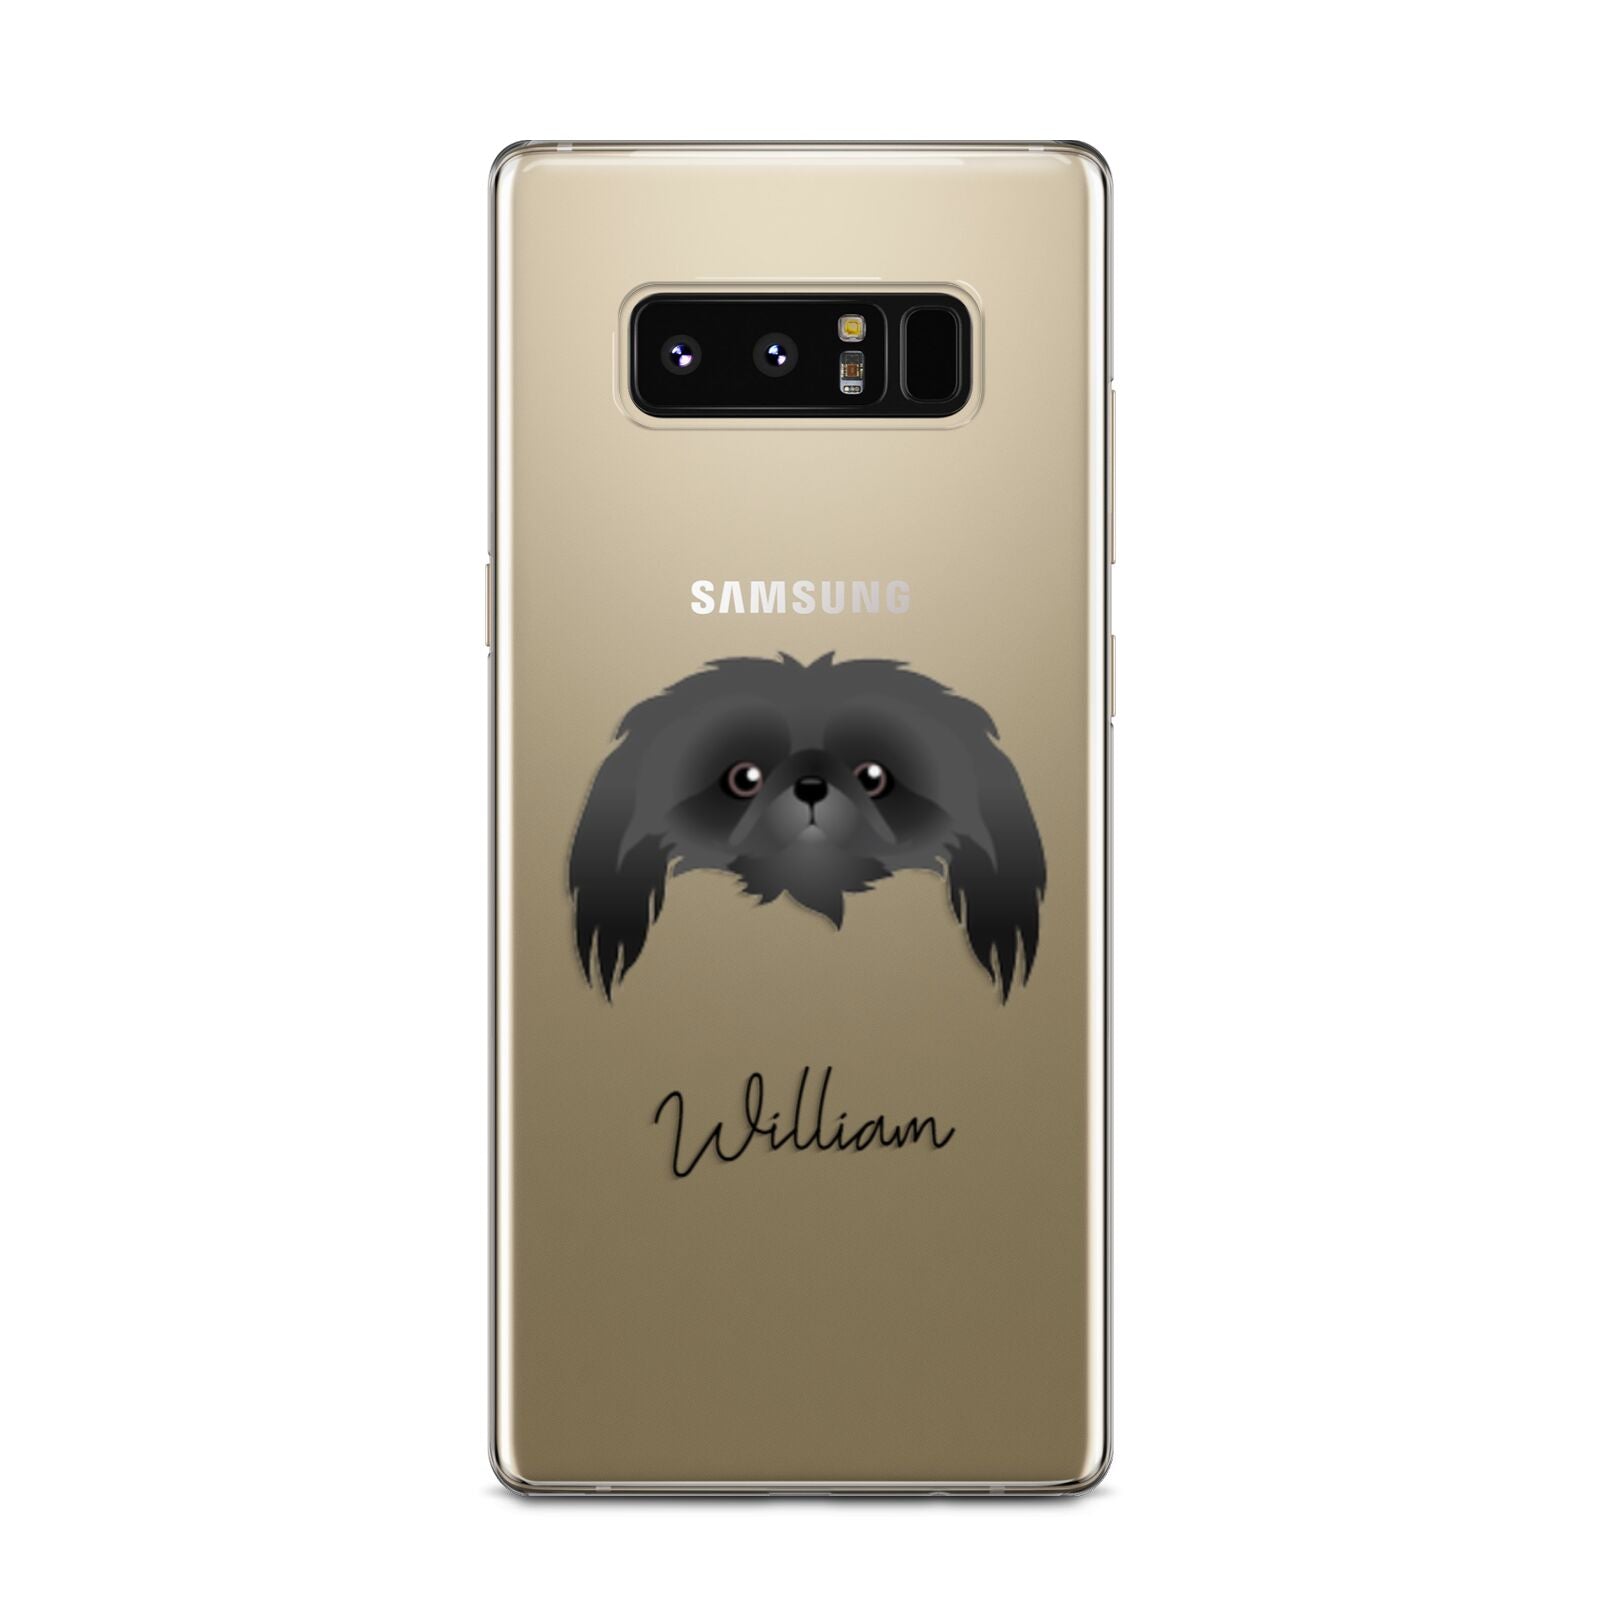 Pekingese Personalised Samsung Galaxy Note 8 Case